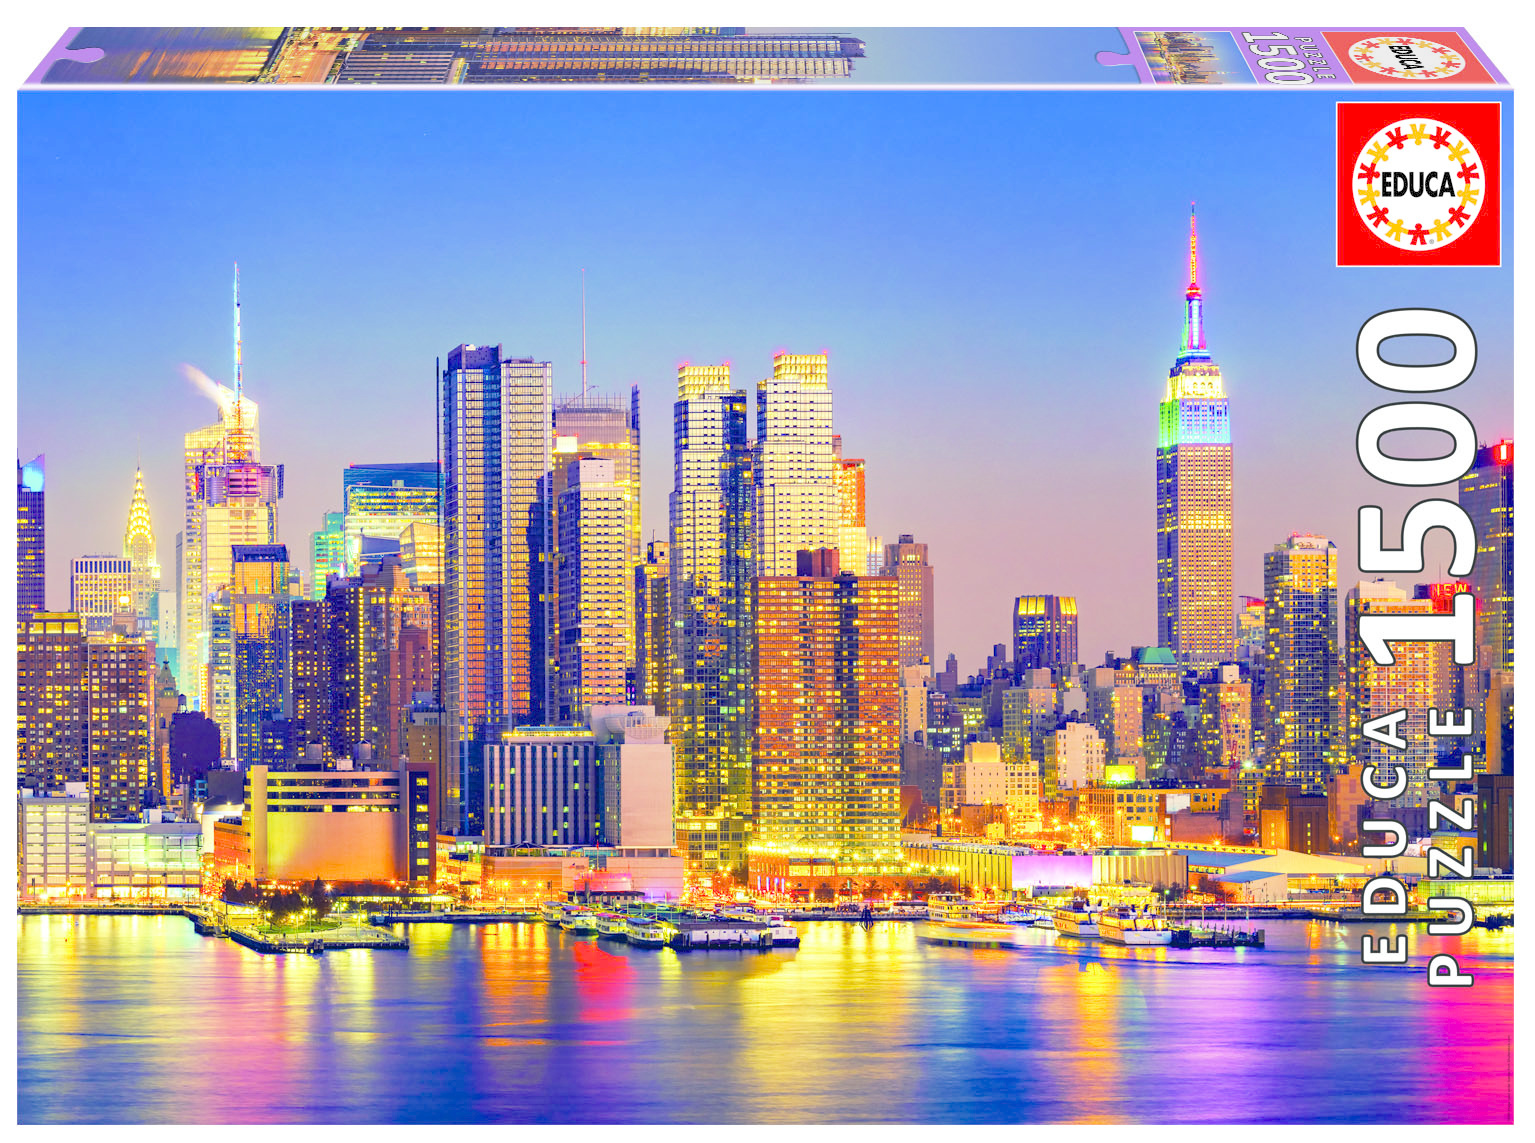 Educa (17131) - Manhattan Skyline - 3000 pieces puzzle